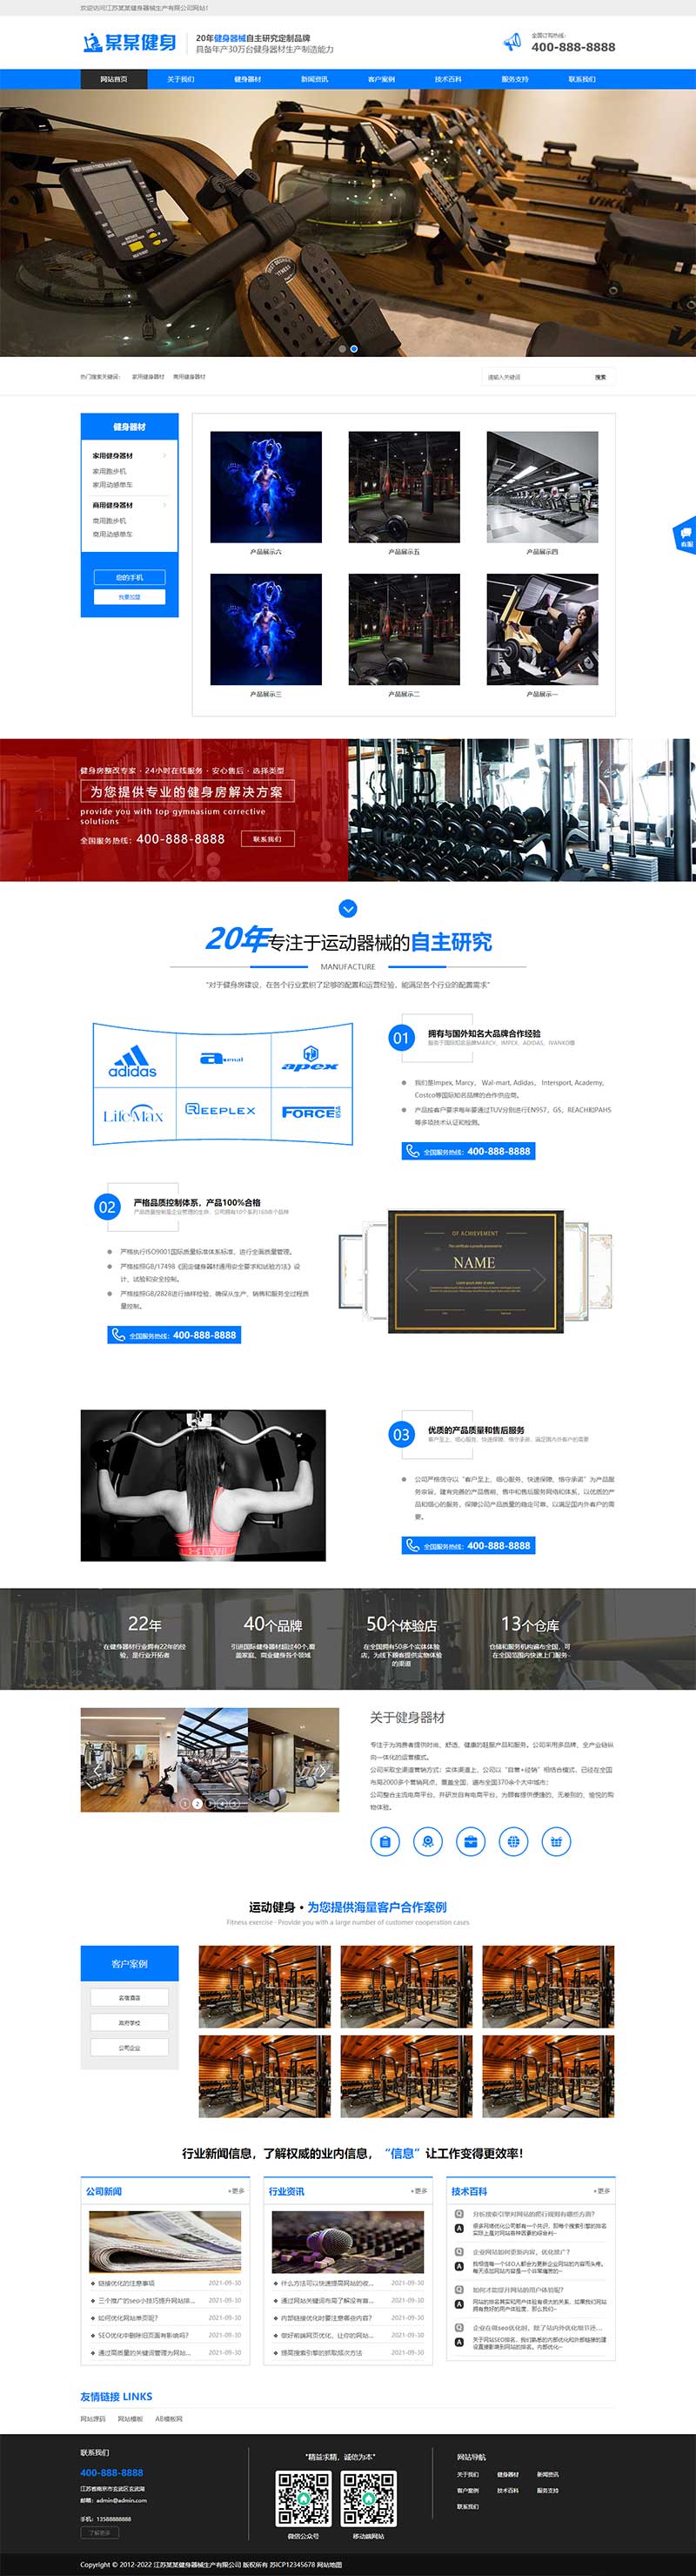 营销型运动健身器材网站模板